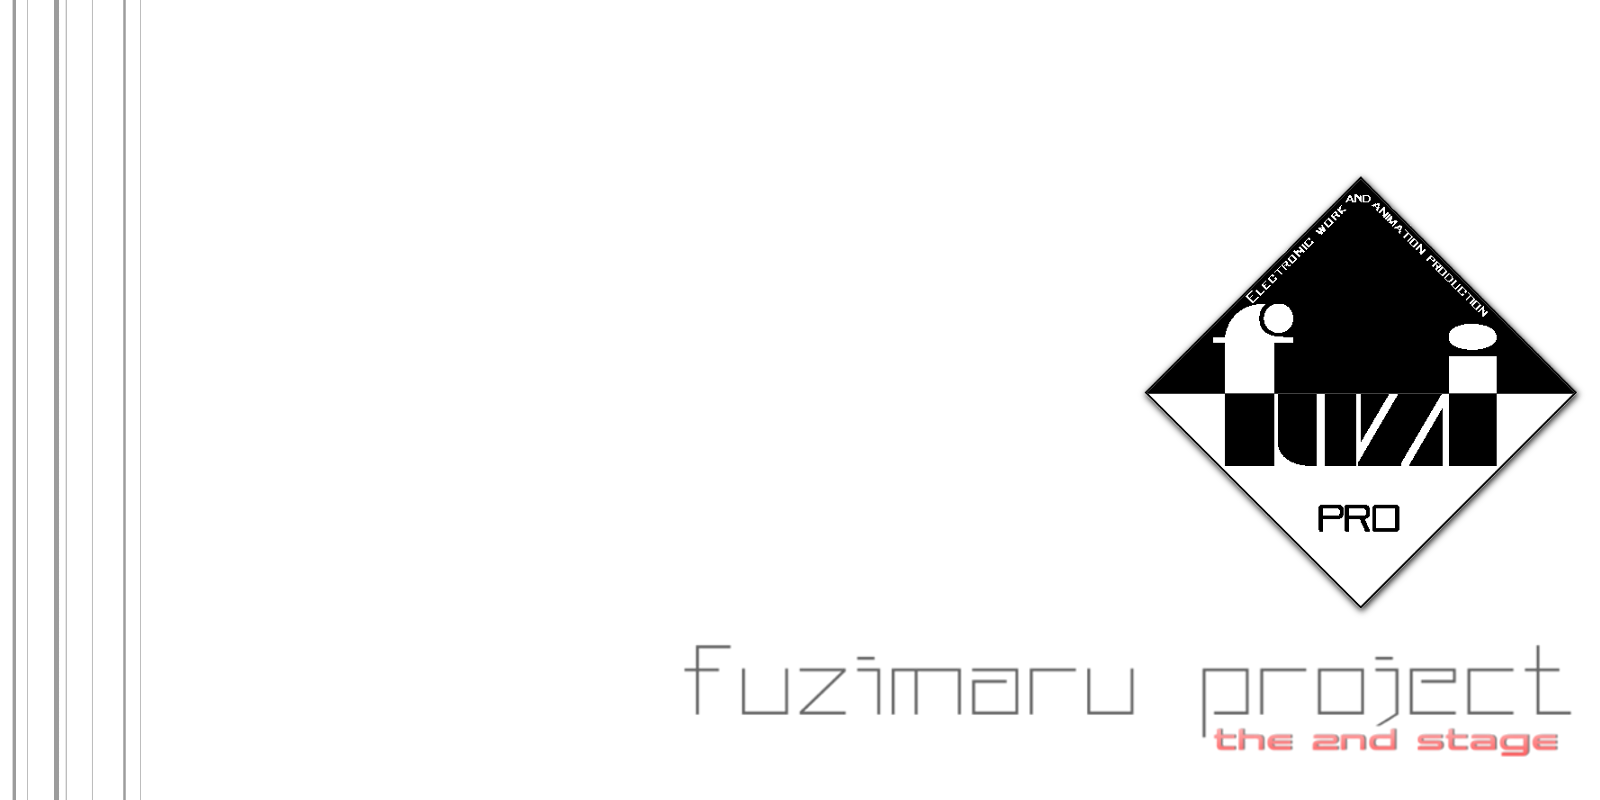 テスト受信等に使える無料fax Myfax を使ってみる Fuzimaru Project 本社